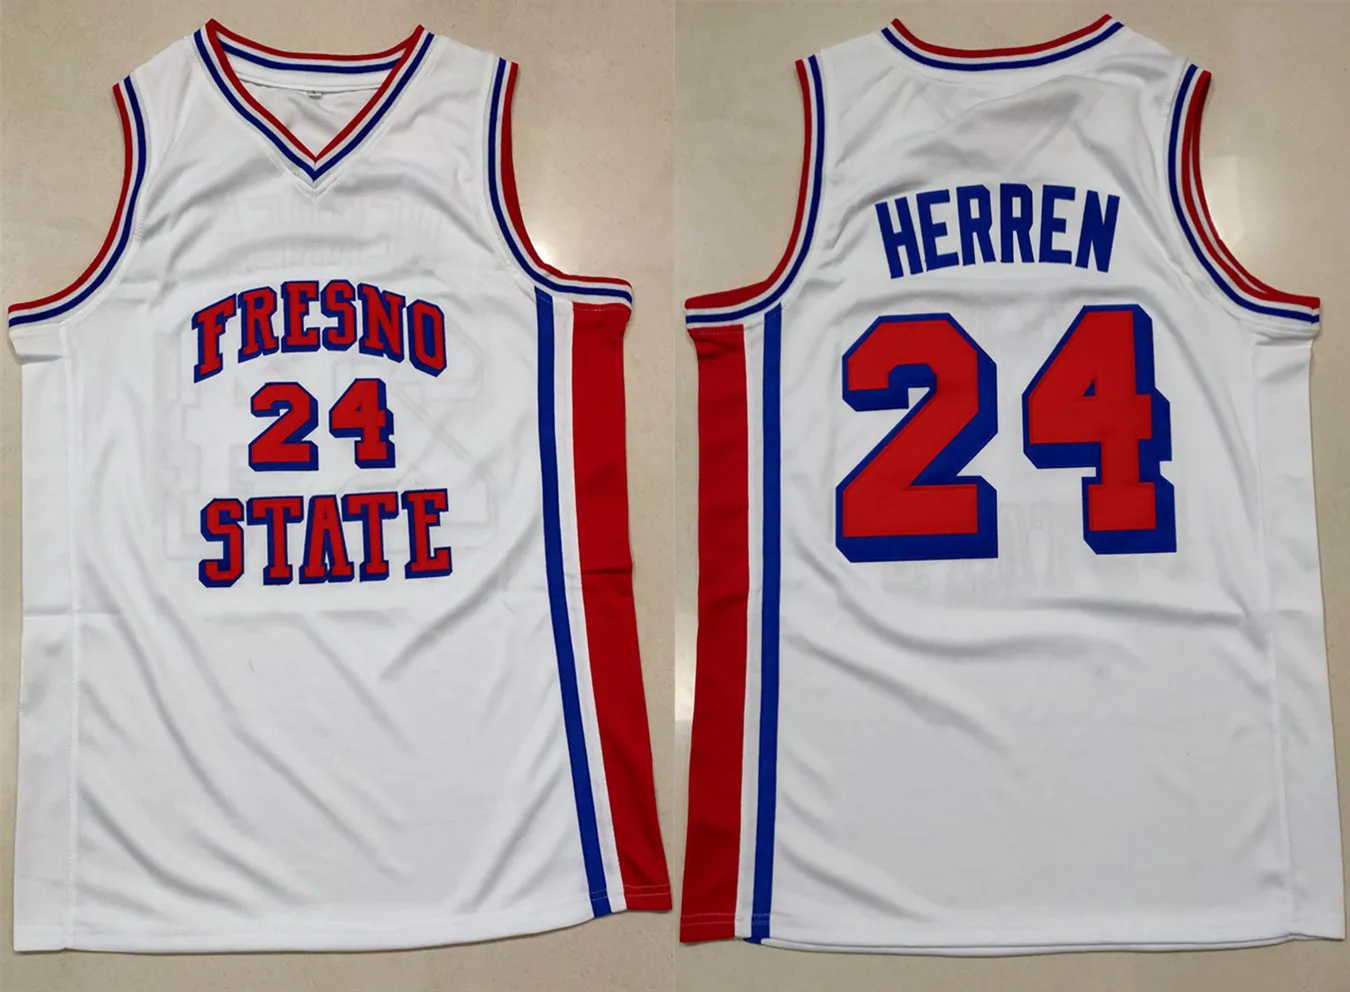 Chris Herren # 24 Fresno الدولة البلدغ كلية بوسطن مسودة اختيار الرجعية كرة السلة جيرسي الرجال مخيط مخصص أي عدد الفانيلة